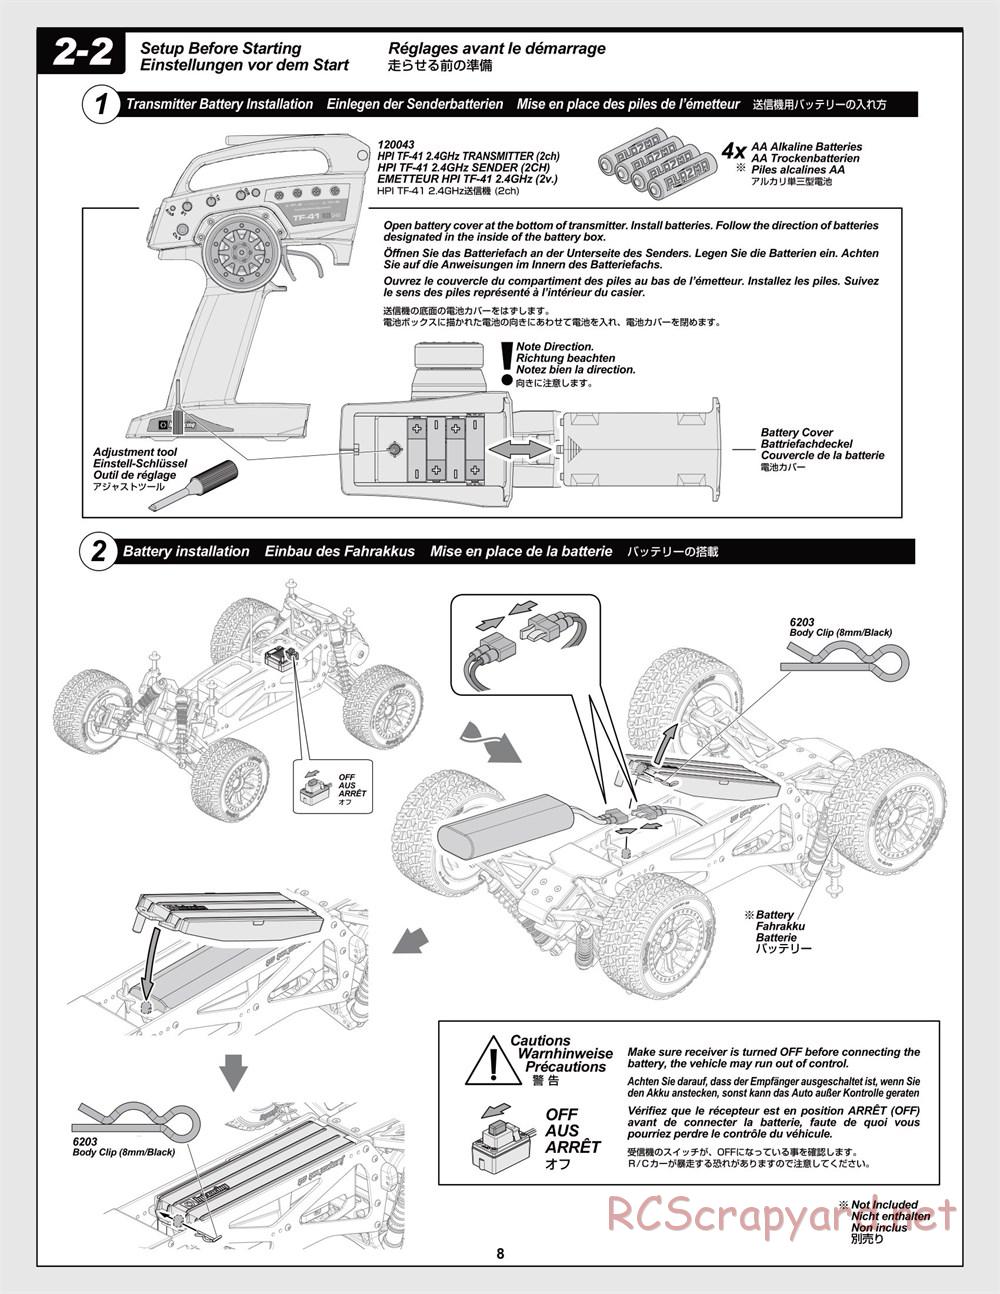 HPI - Jumpshot MT Flux - Manual - Page 8